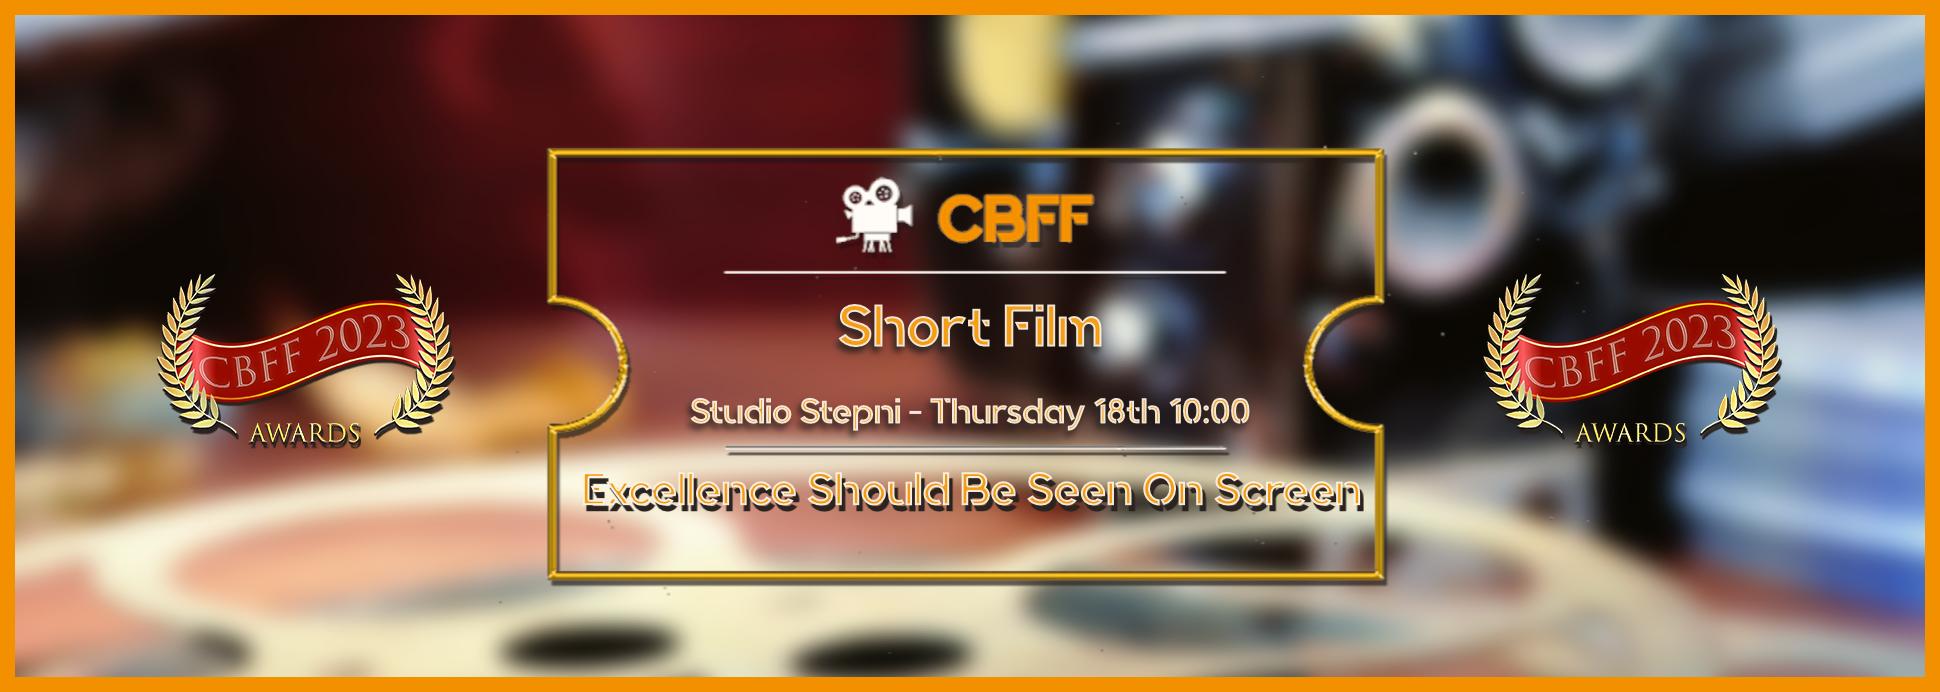 Studio Stepni - Short Film 18th 10:00